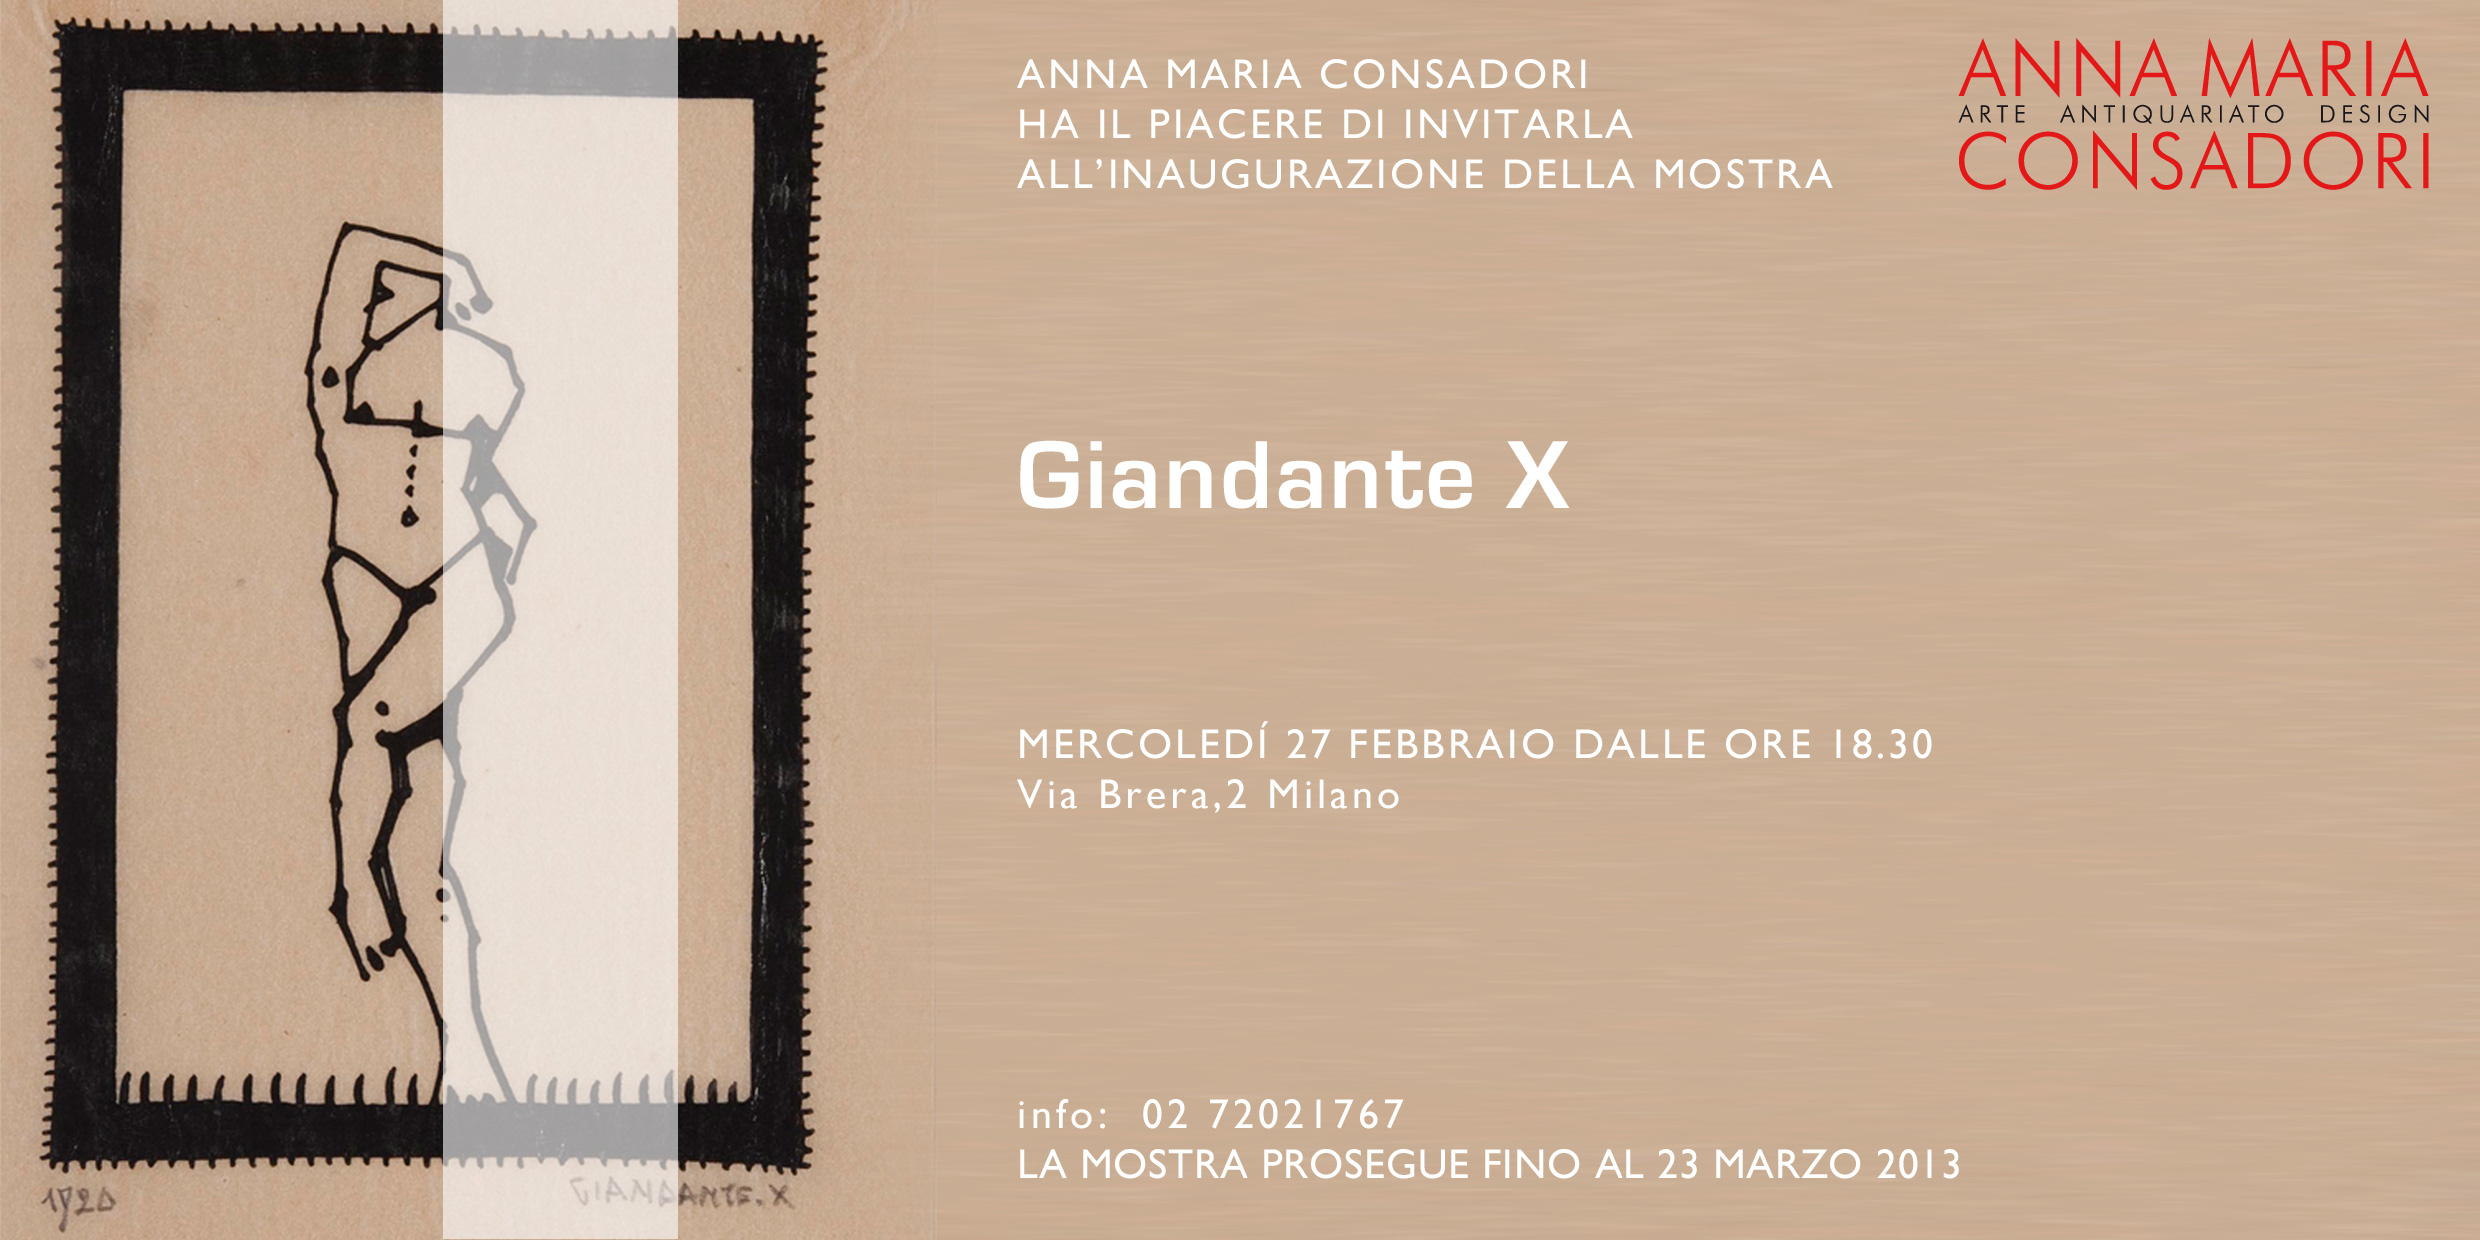 Giandante X alla Galleria Consadori, Febbraio 2013